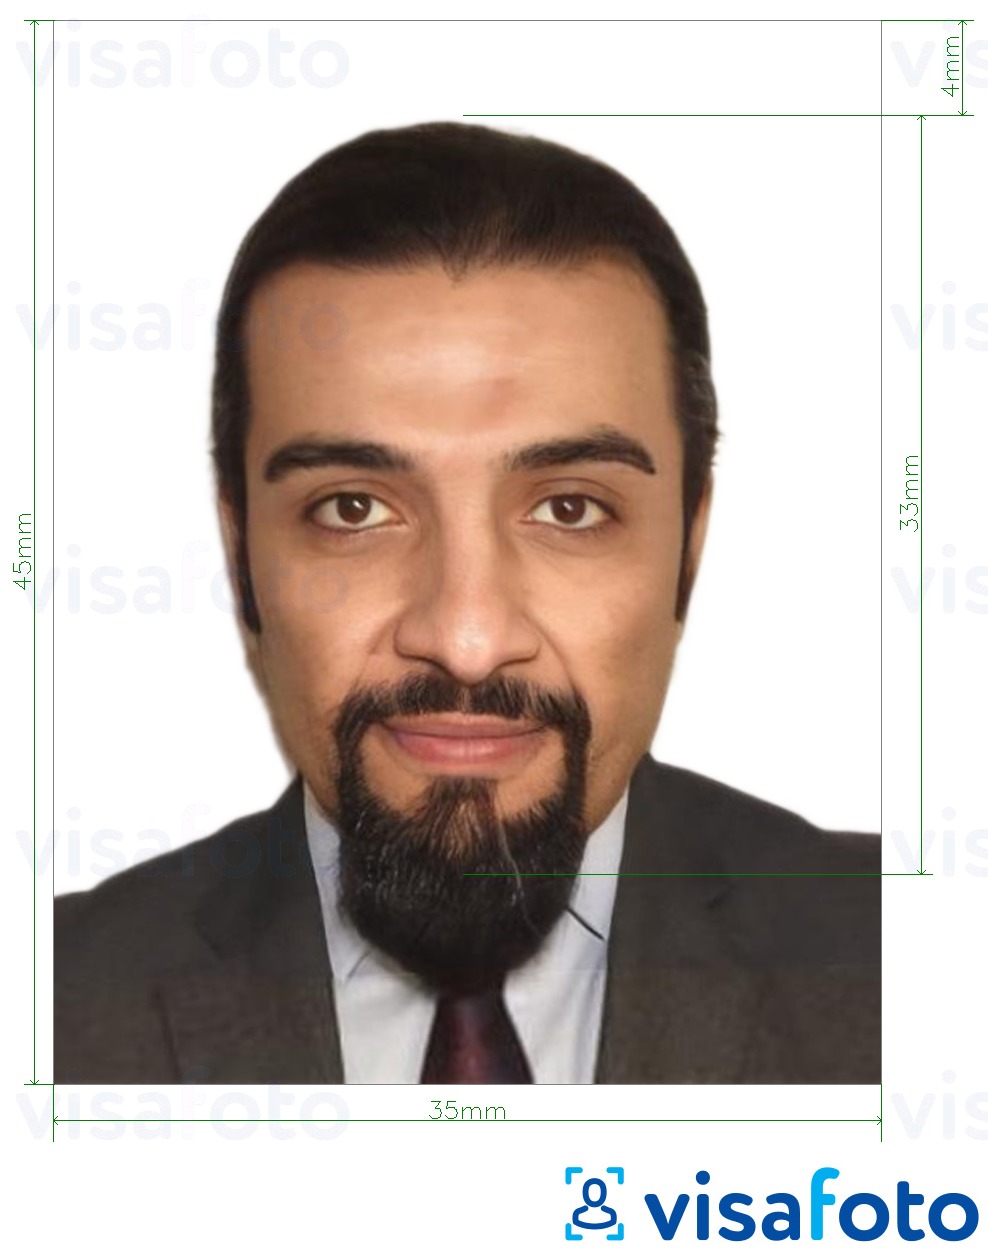 정확한 사이즈 크기의 요르단 여권 3.5x4.5cm (35x45mm) 사진의 예